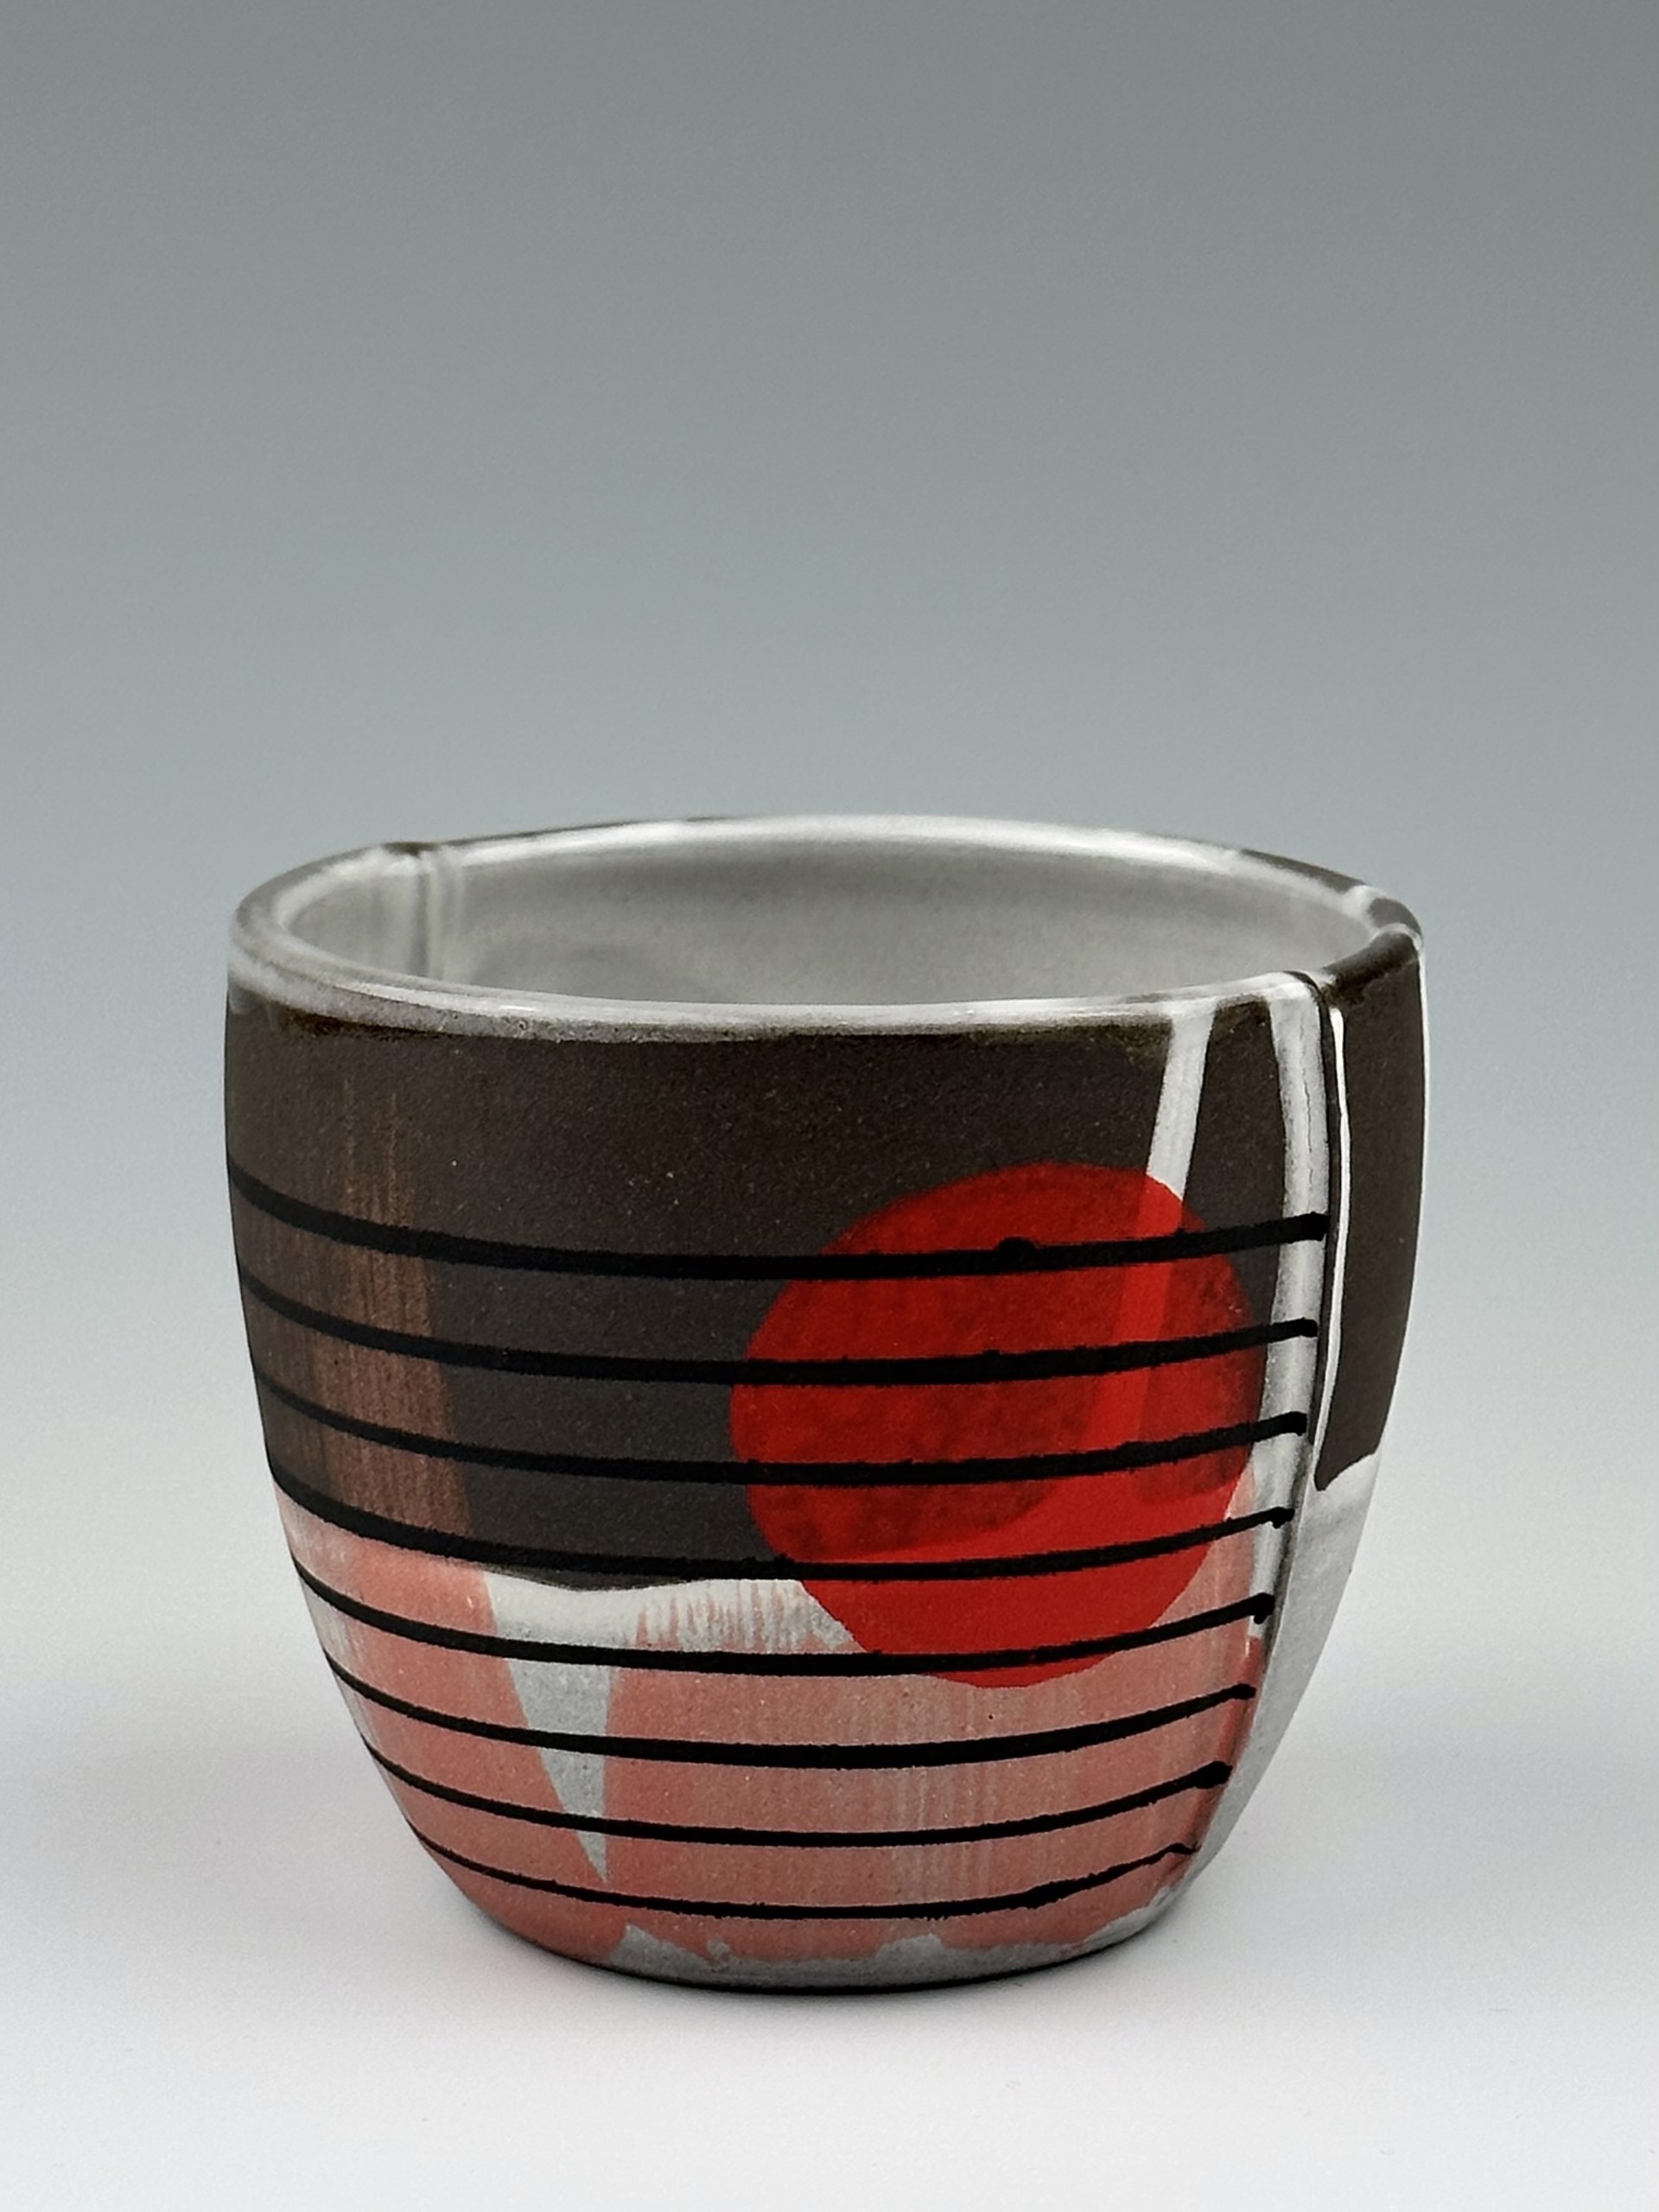 Cup No. 3 by Tara Dawley